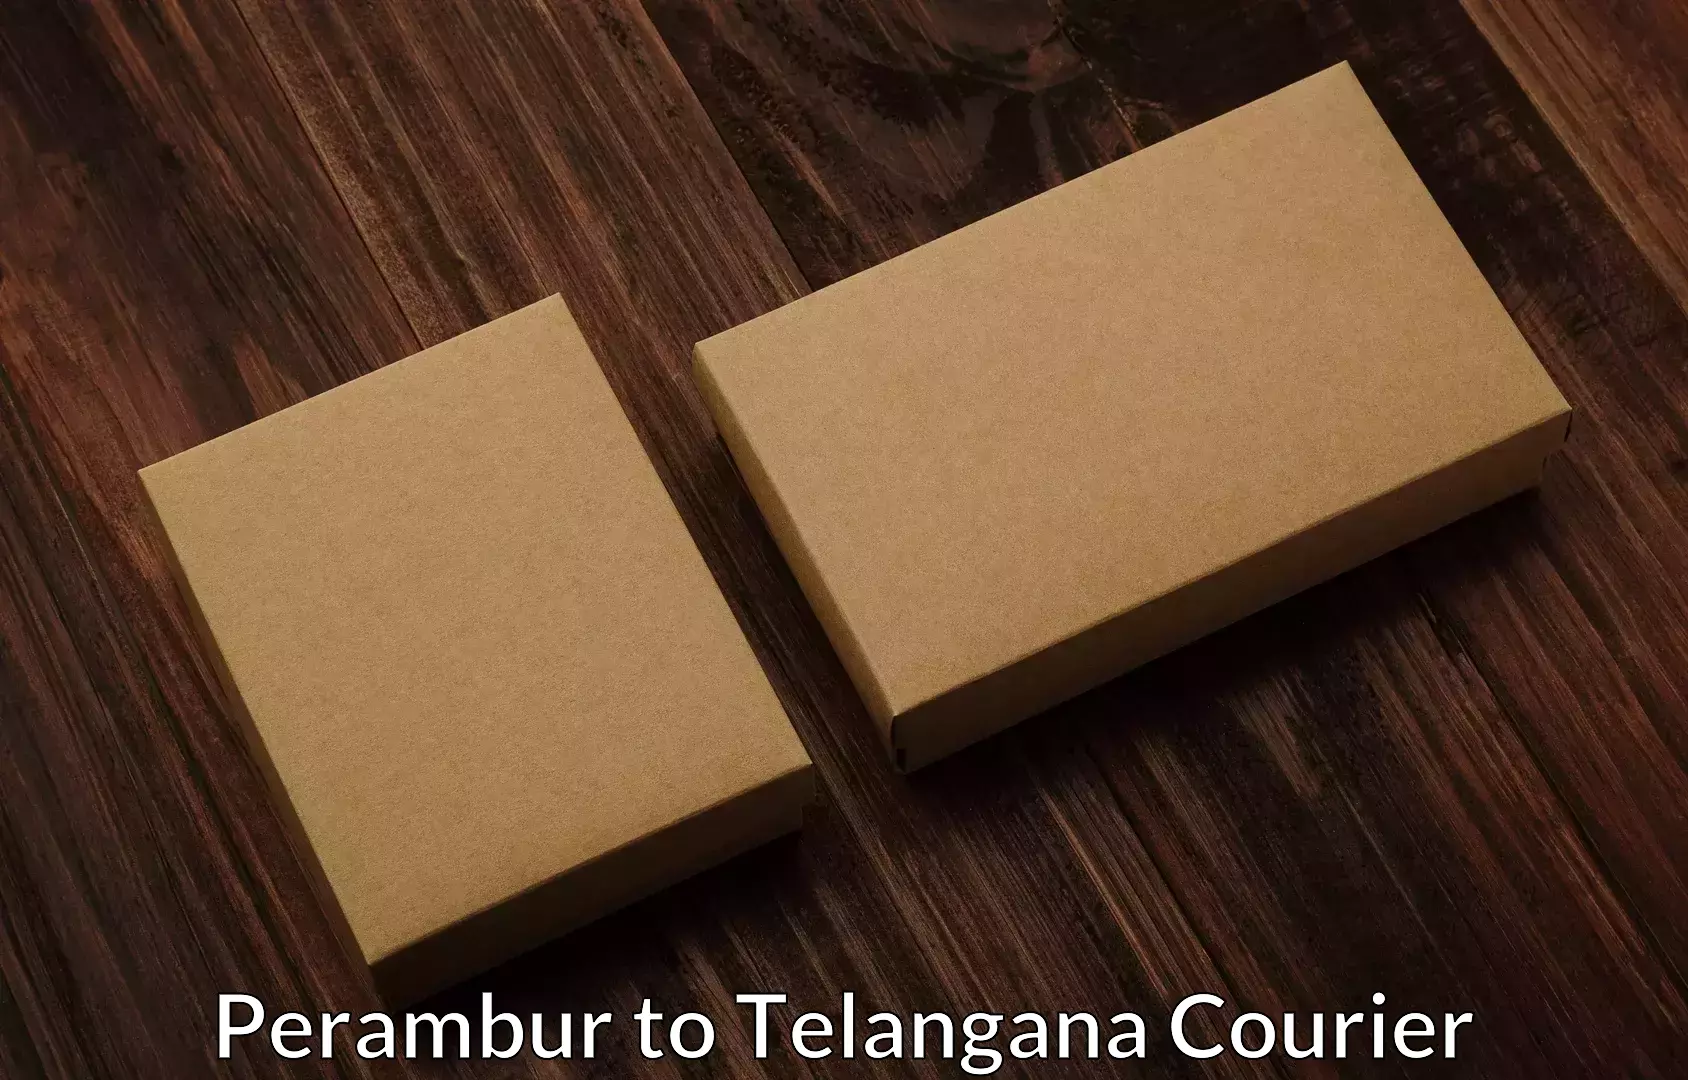 Furniture transport company Perambur to Telangana